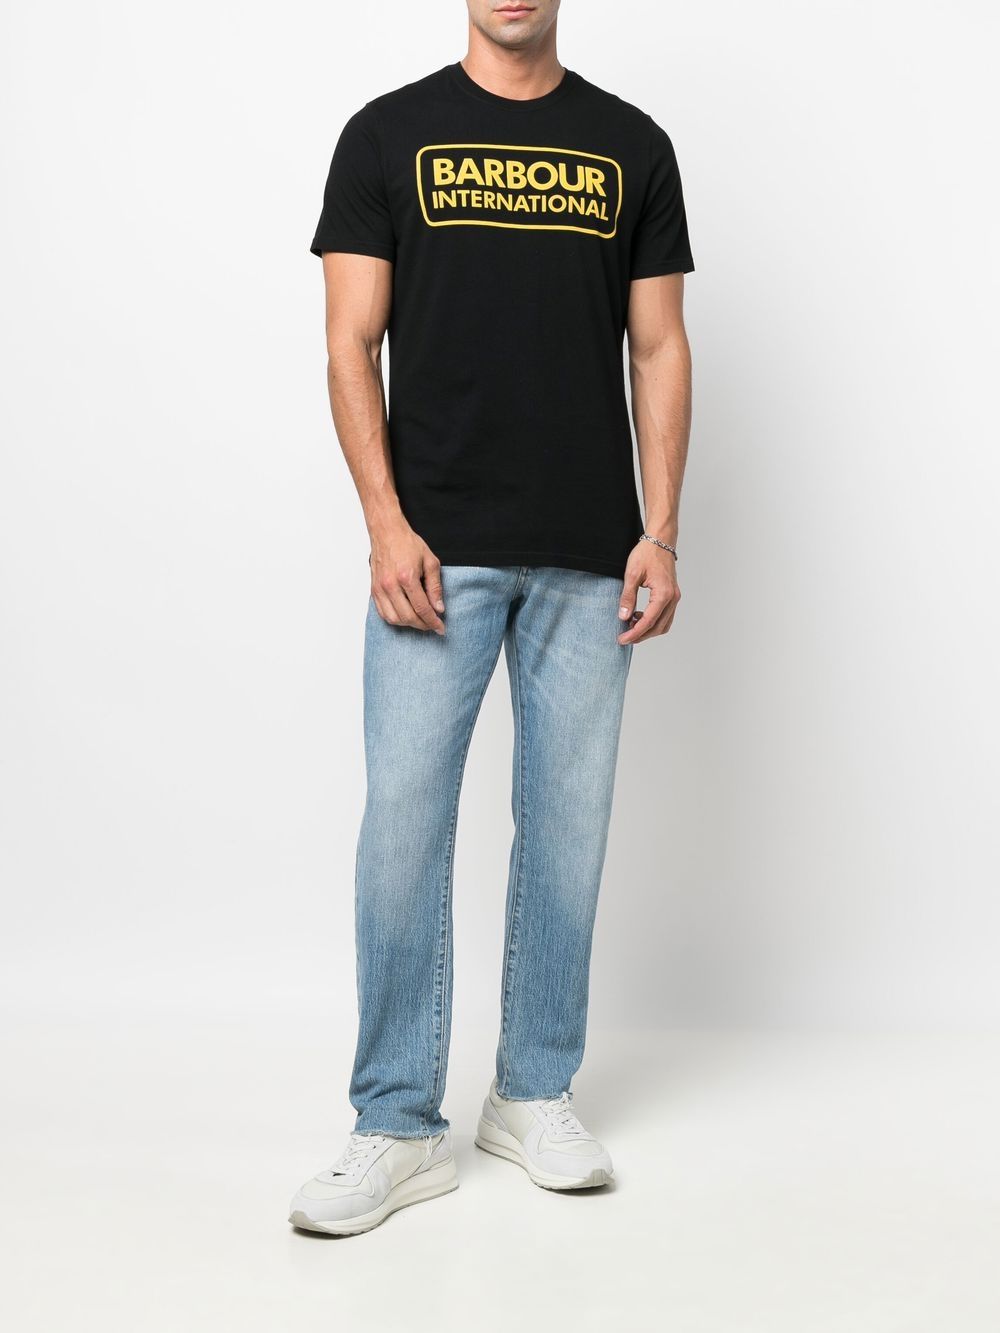 Barbour T-shirt met print - Zwart